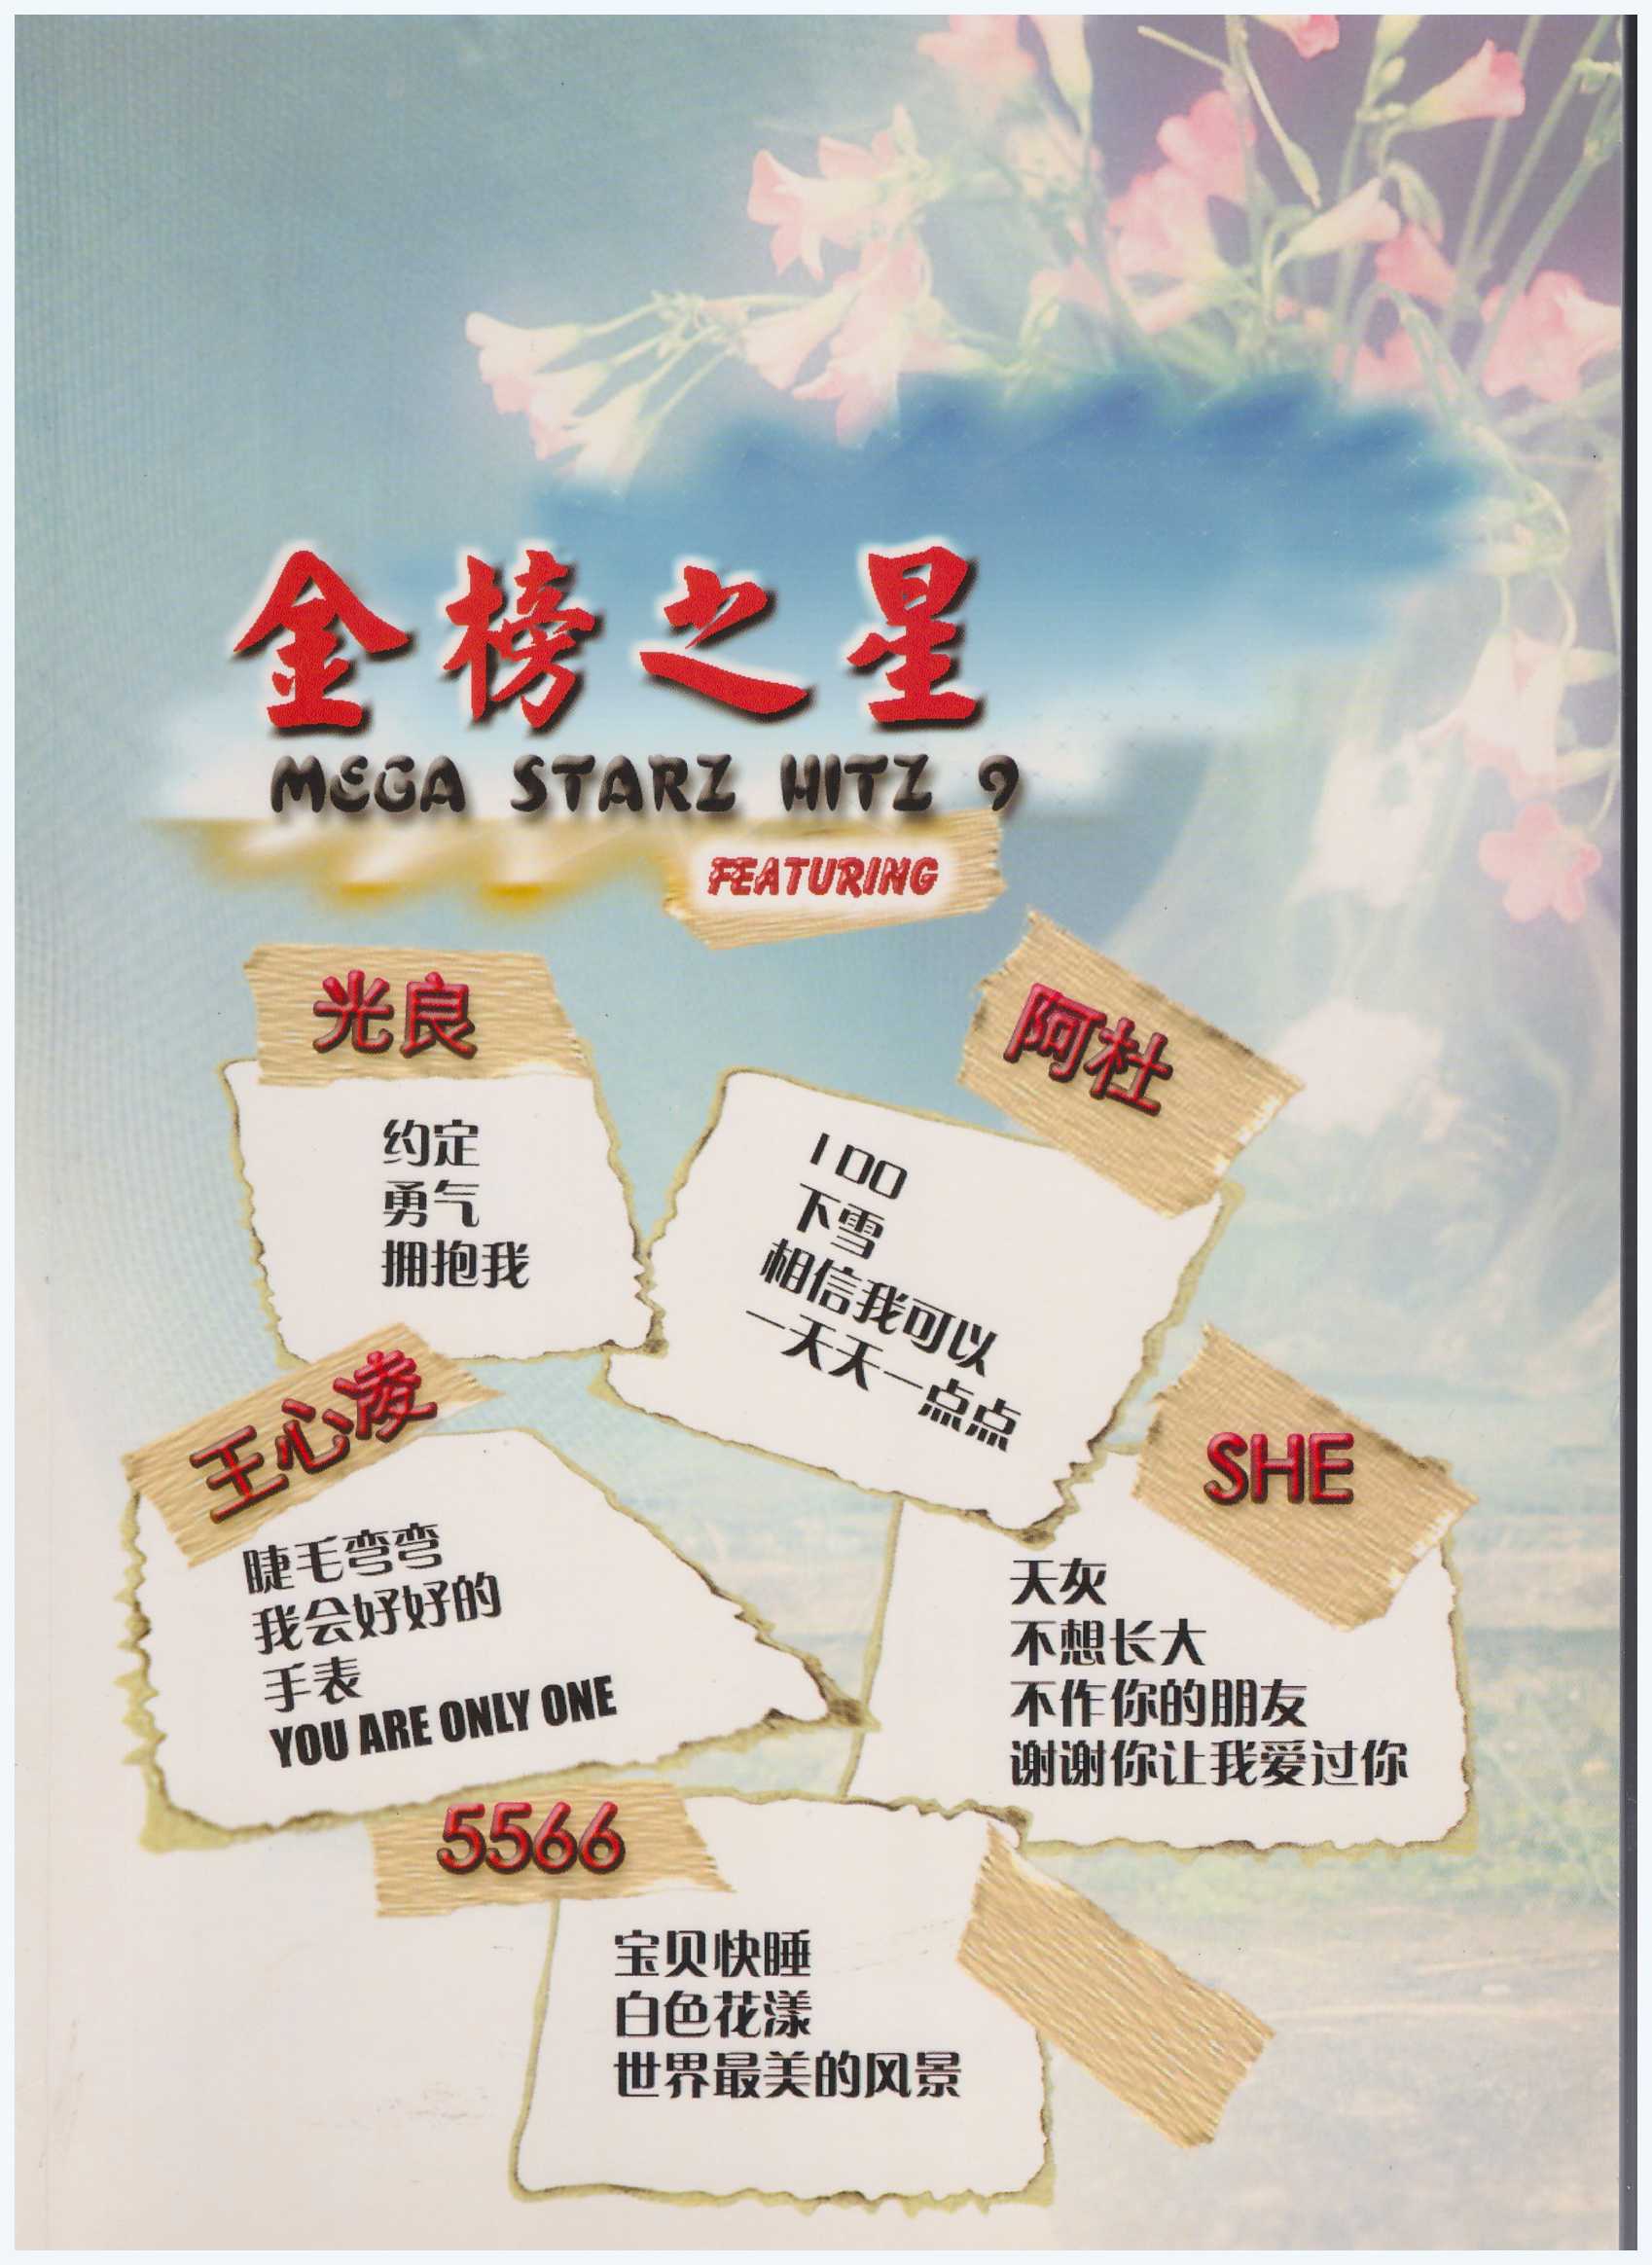 Mega Starz Hitz 9 (金榜之星) / Pop Song Book / PVG Book / Piano Book / Vocal Book / Guitar Book / Chinese Song Book